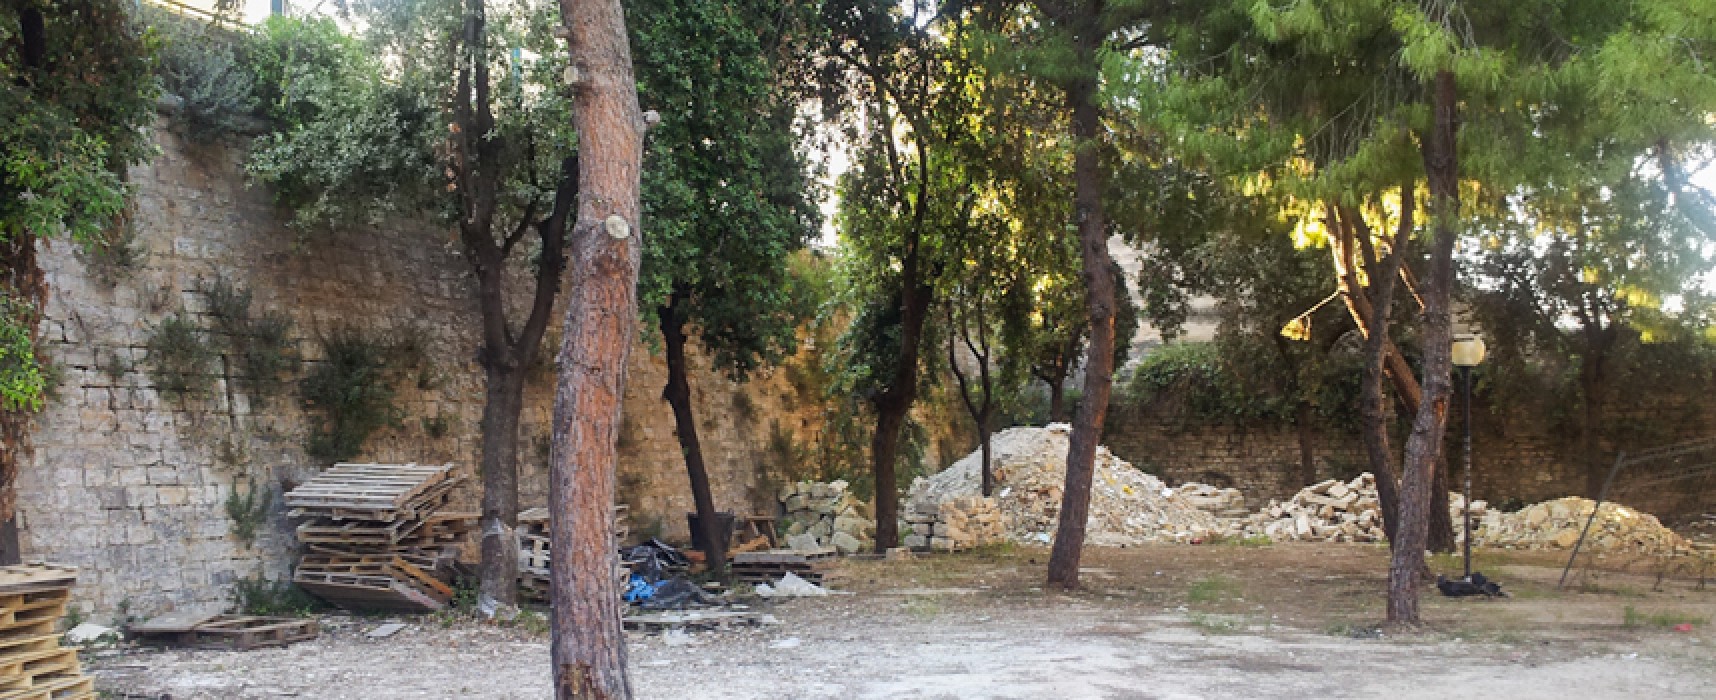 Parco delle beatitudini in stato di abbandono, l’appello di Mauro Simone al sindaco / FOTO